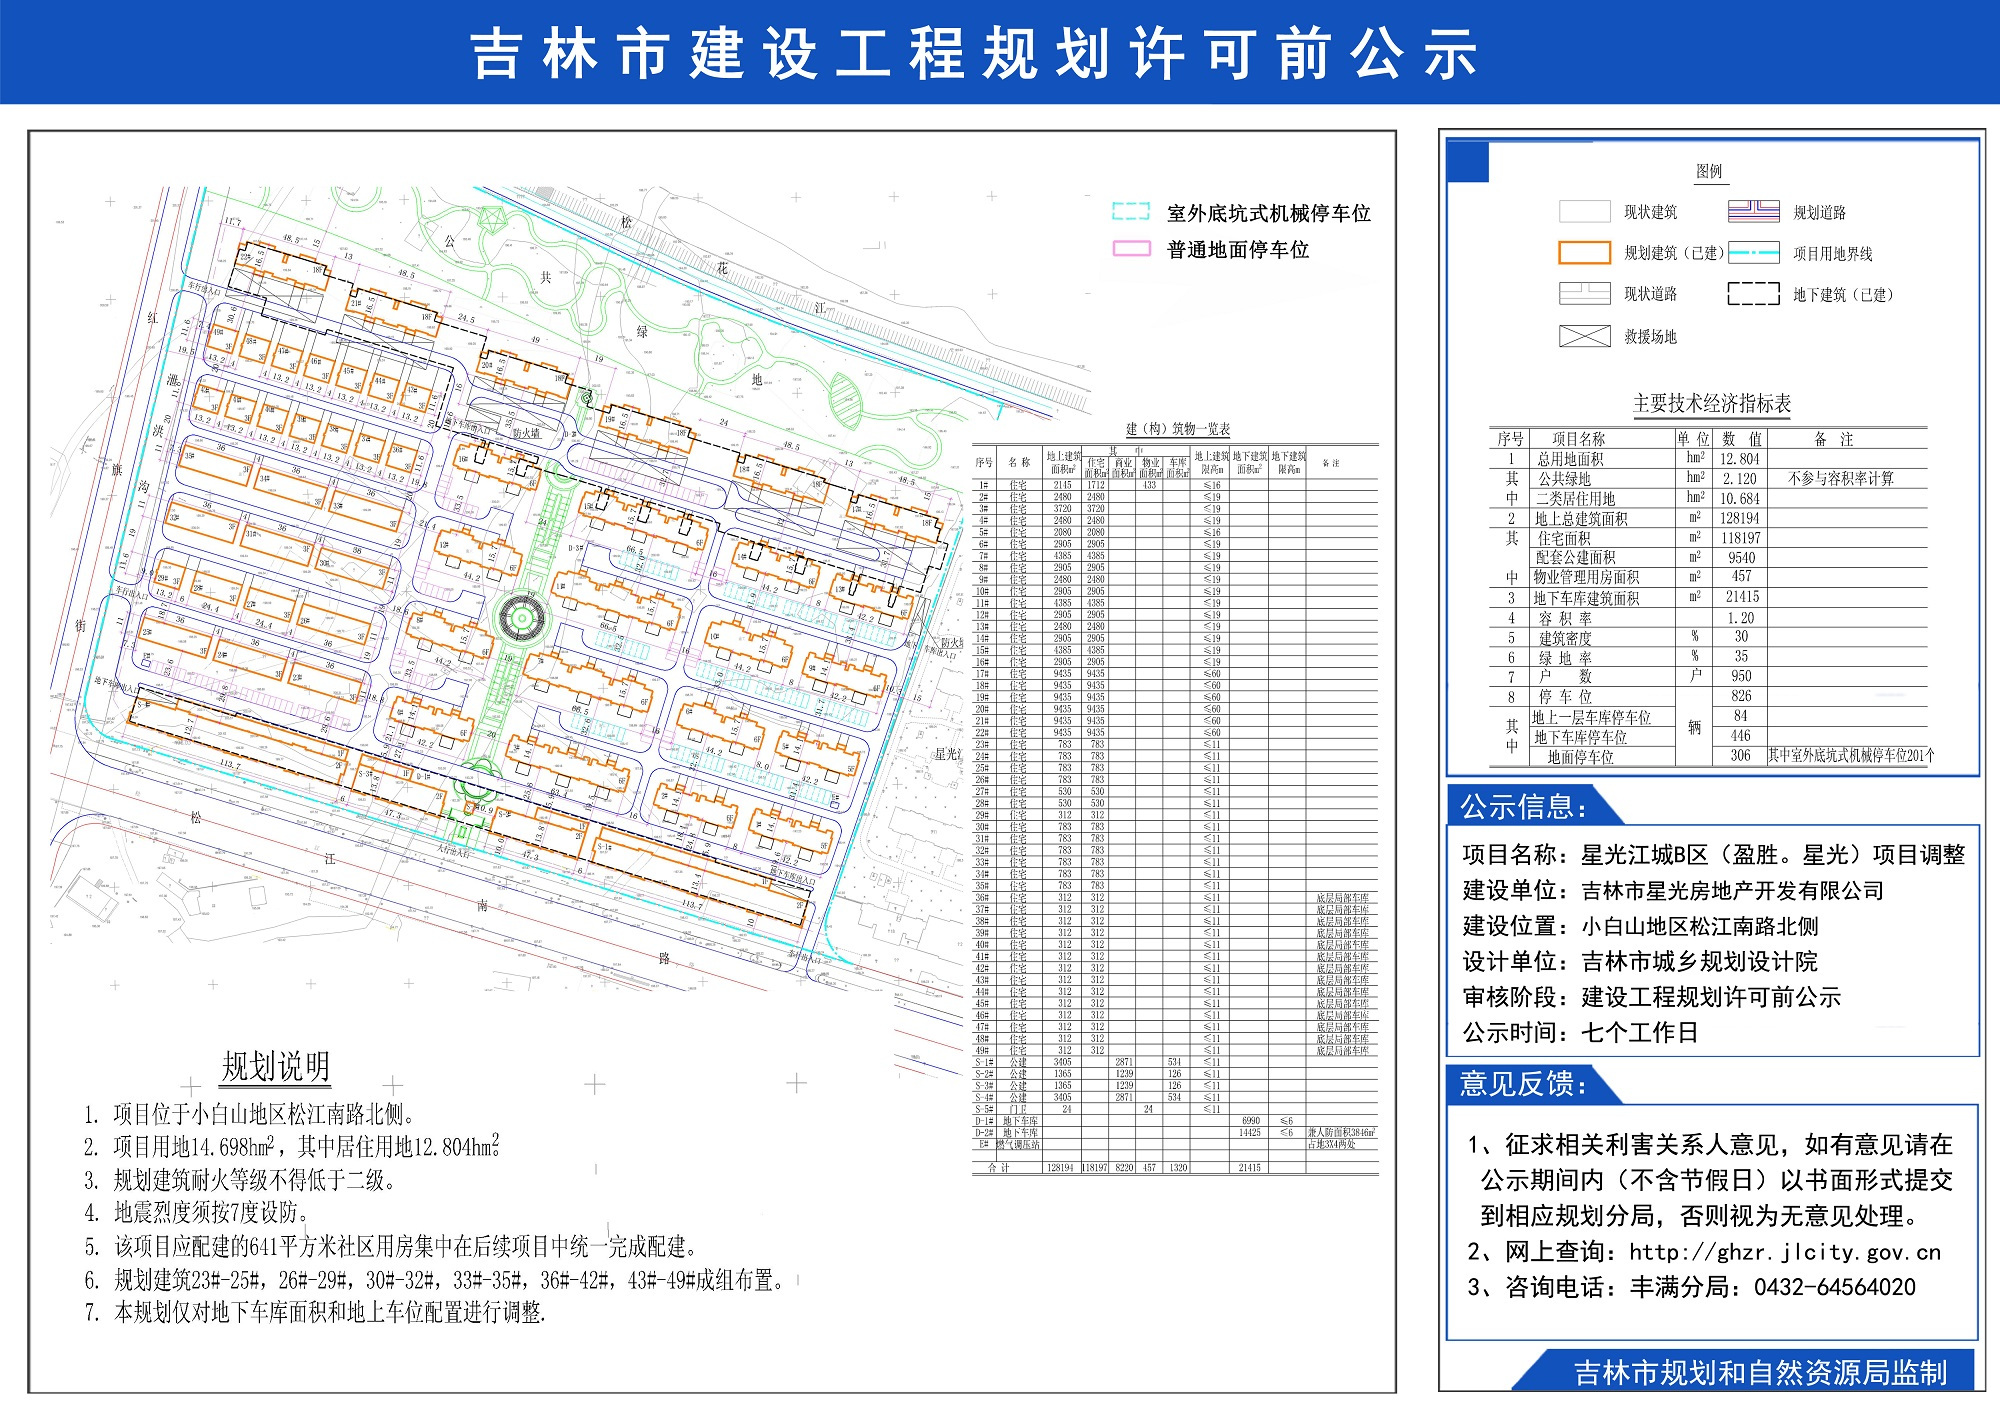 星光江城B区项目规划方案调整公示